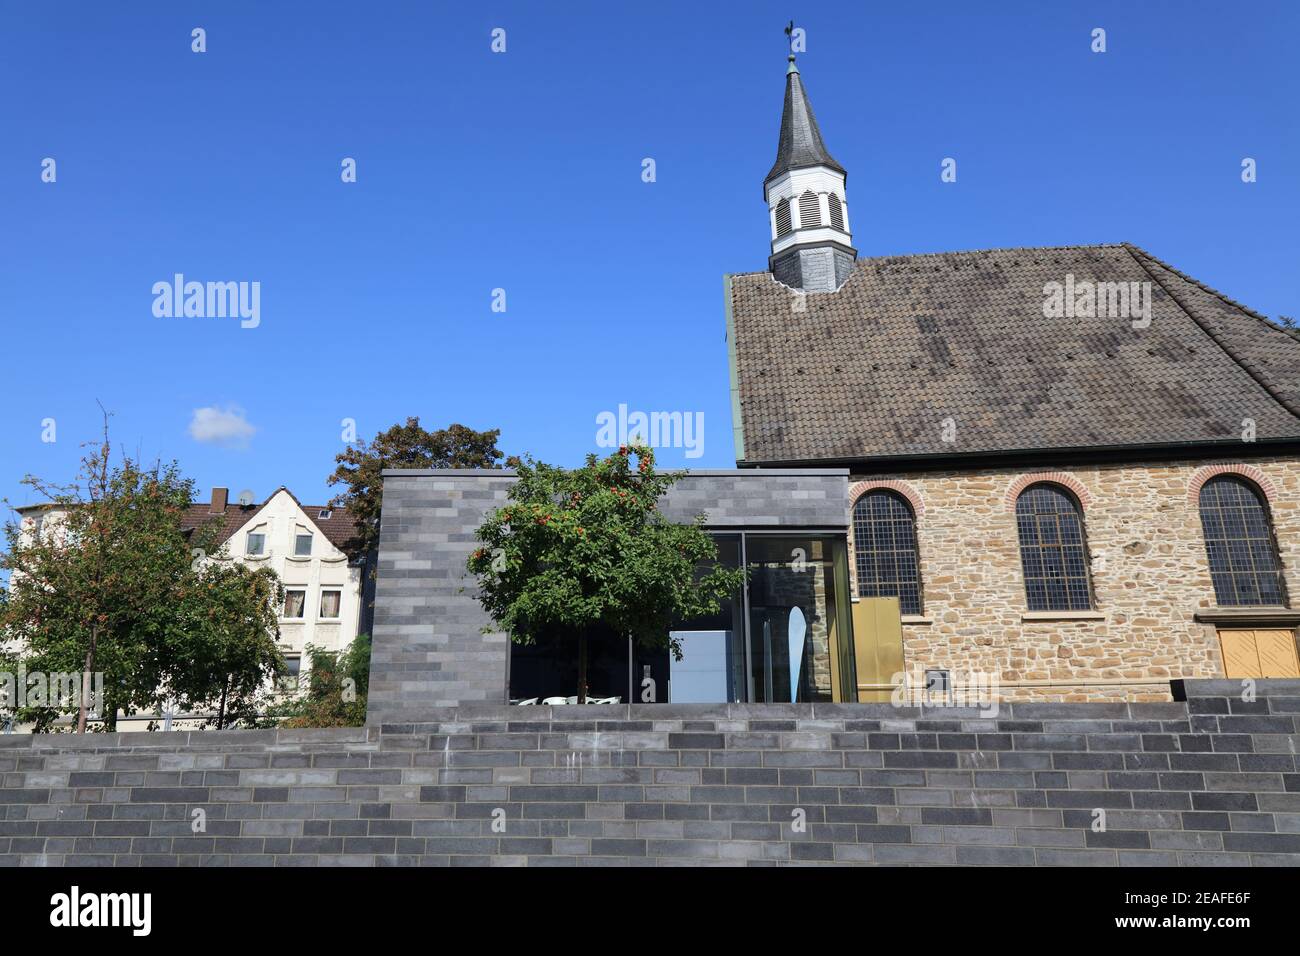 Wattenscheid, quartier de la ville de Bochum en Allemagne. Église protestante évangélique. Banque D'Images